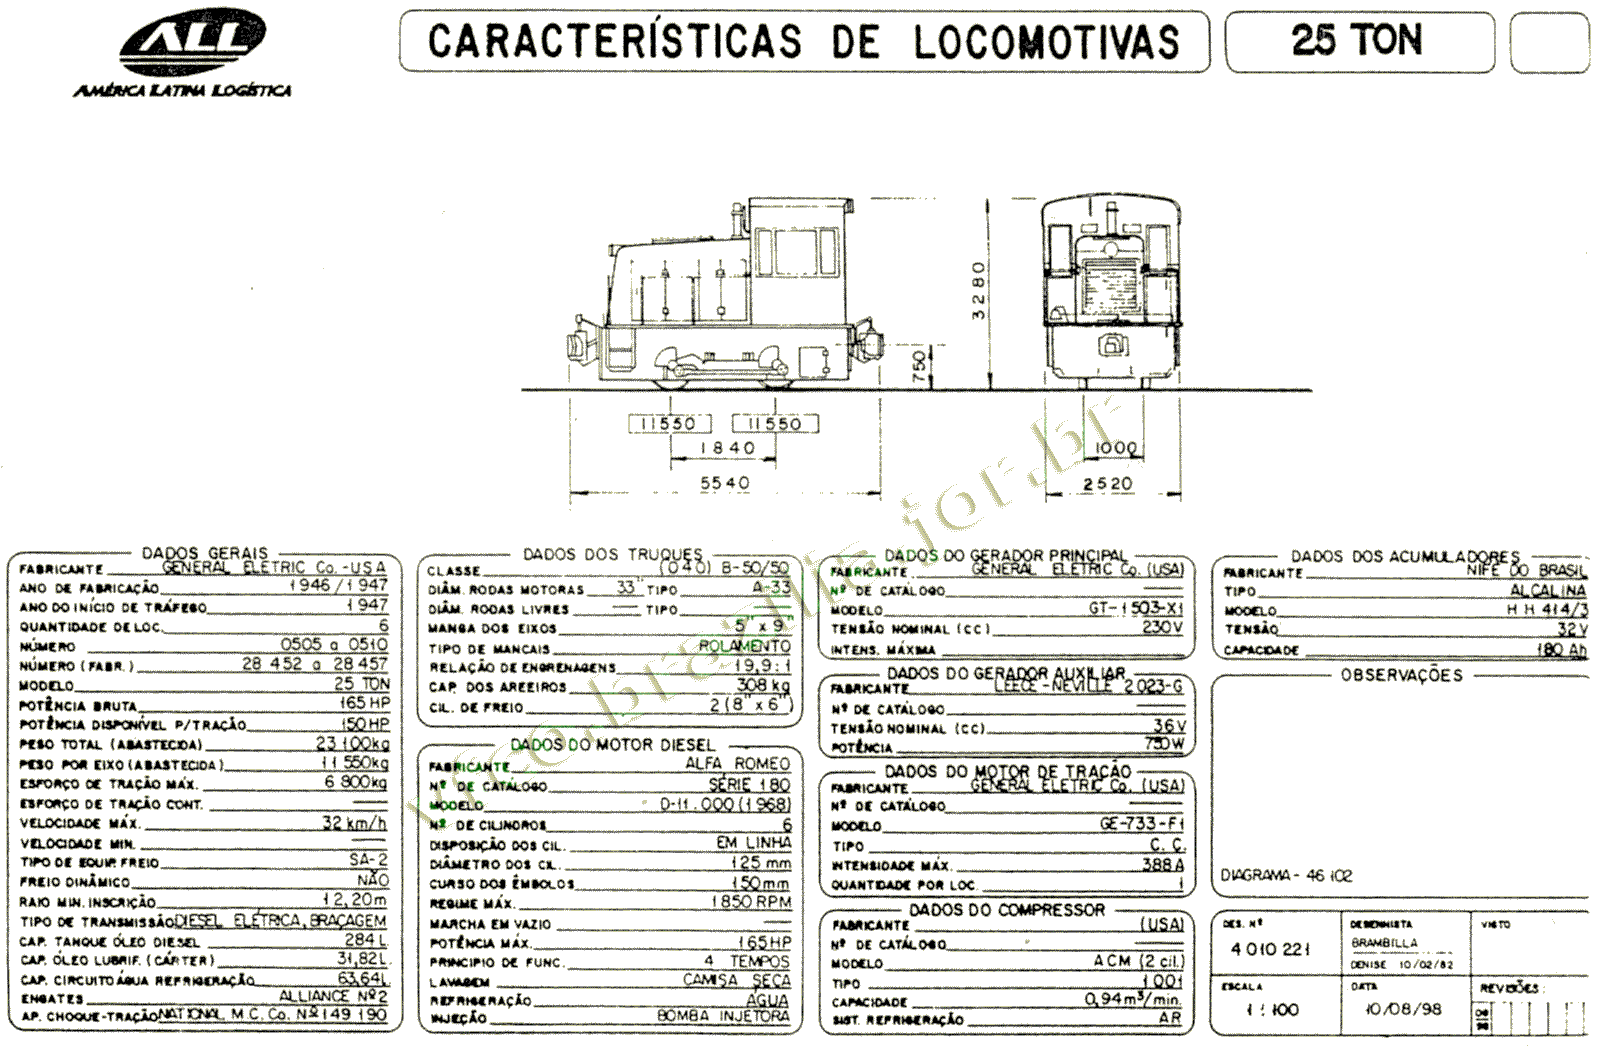 Desenho e dimensões da Locomotiva GE 25 toneladas da ferrovia ALL